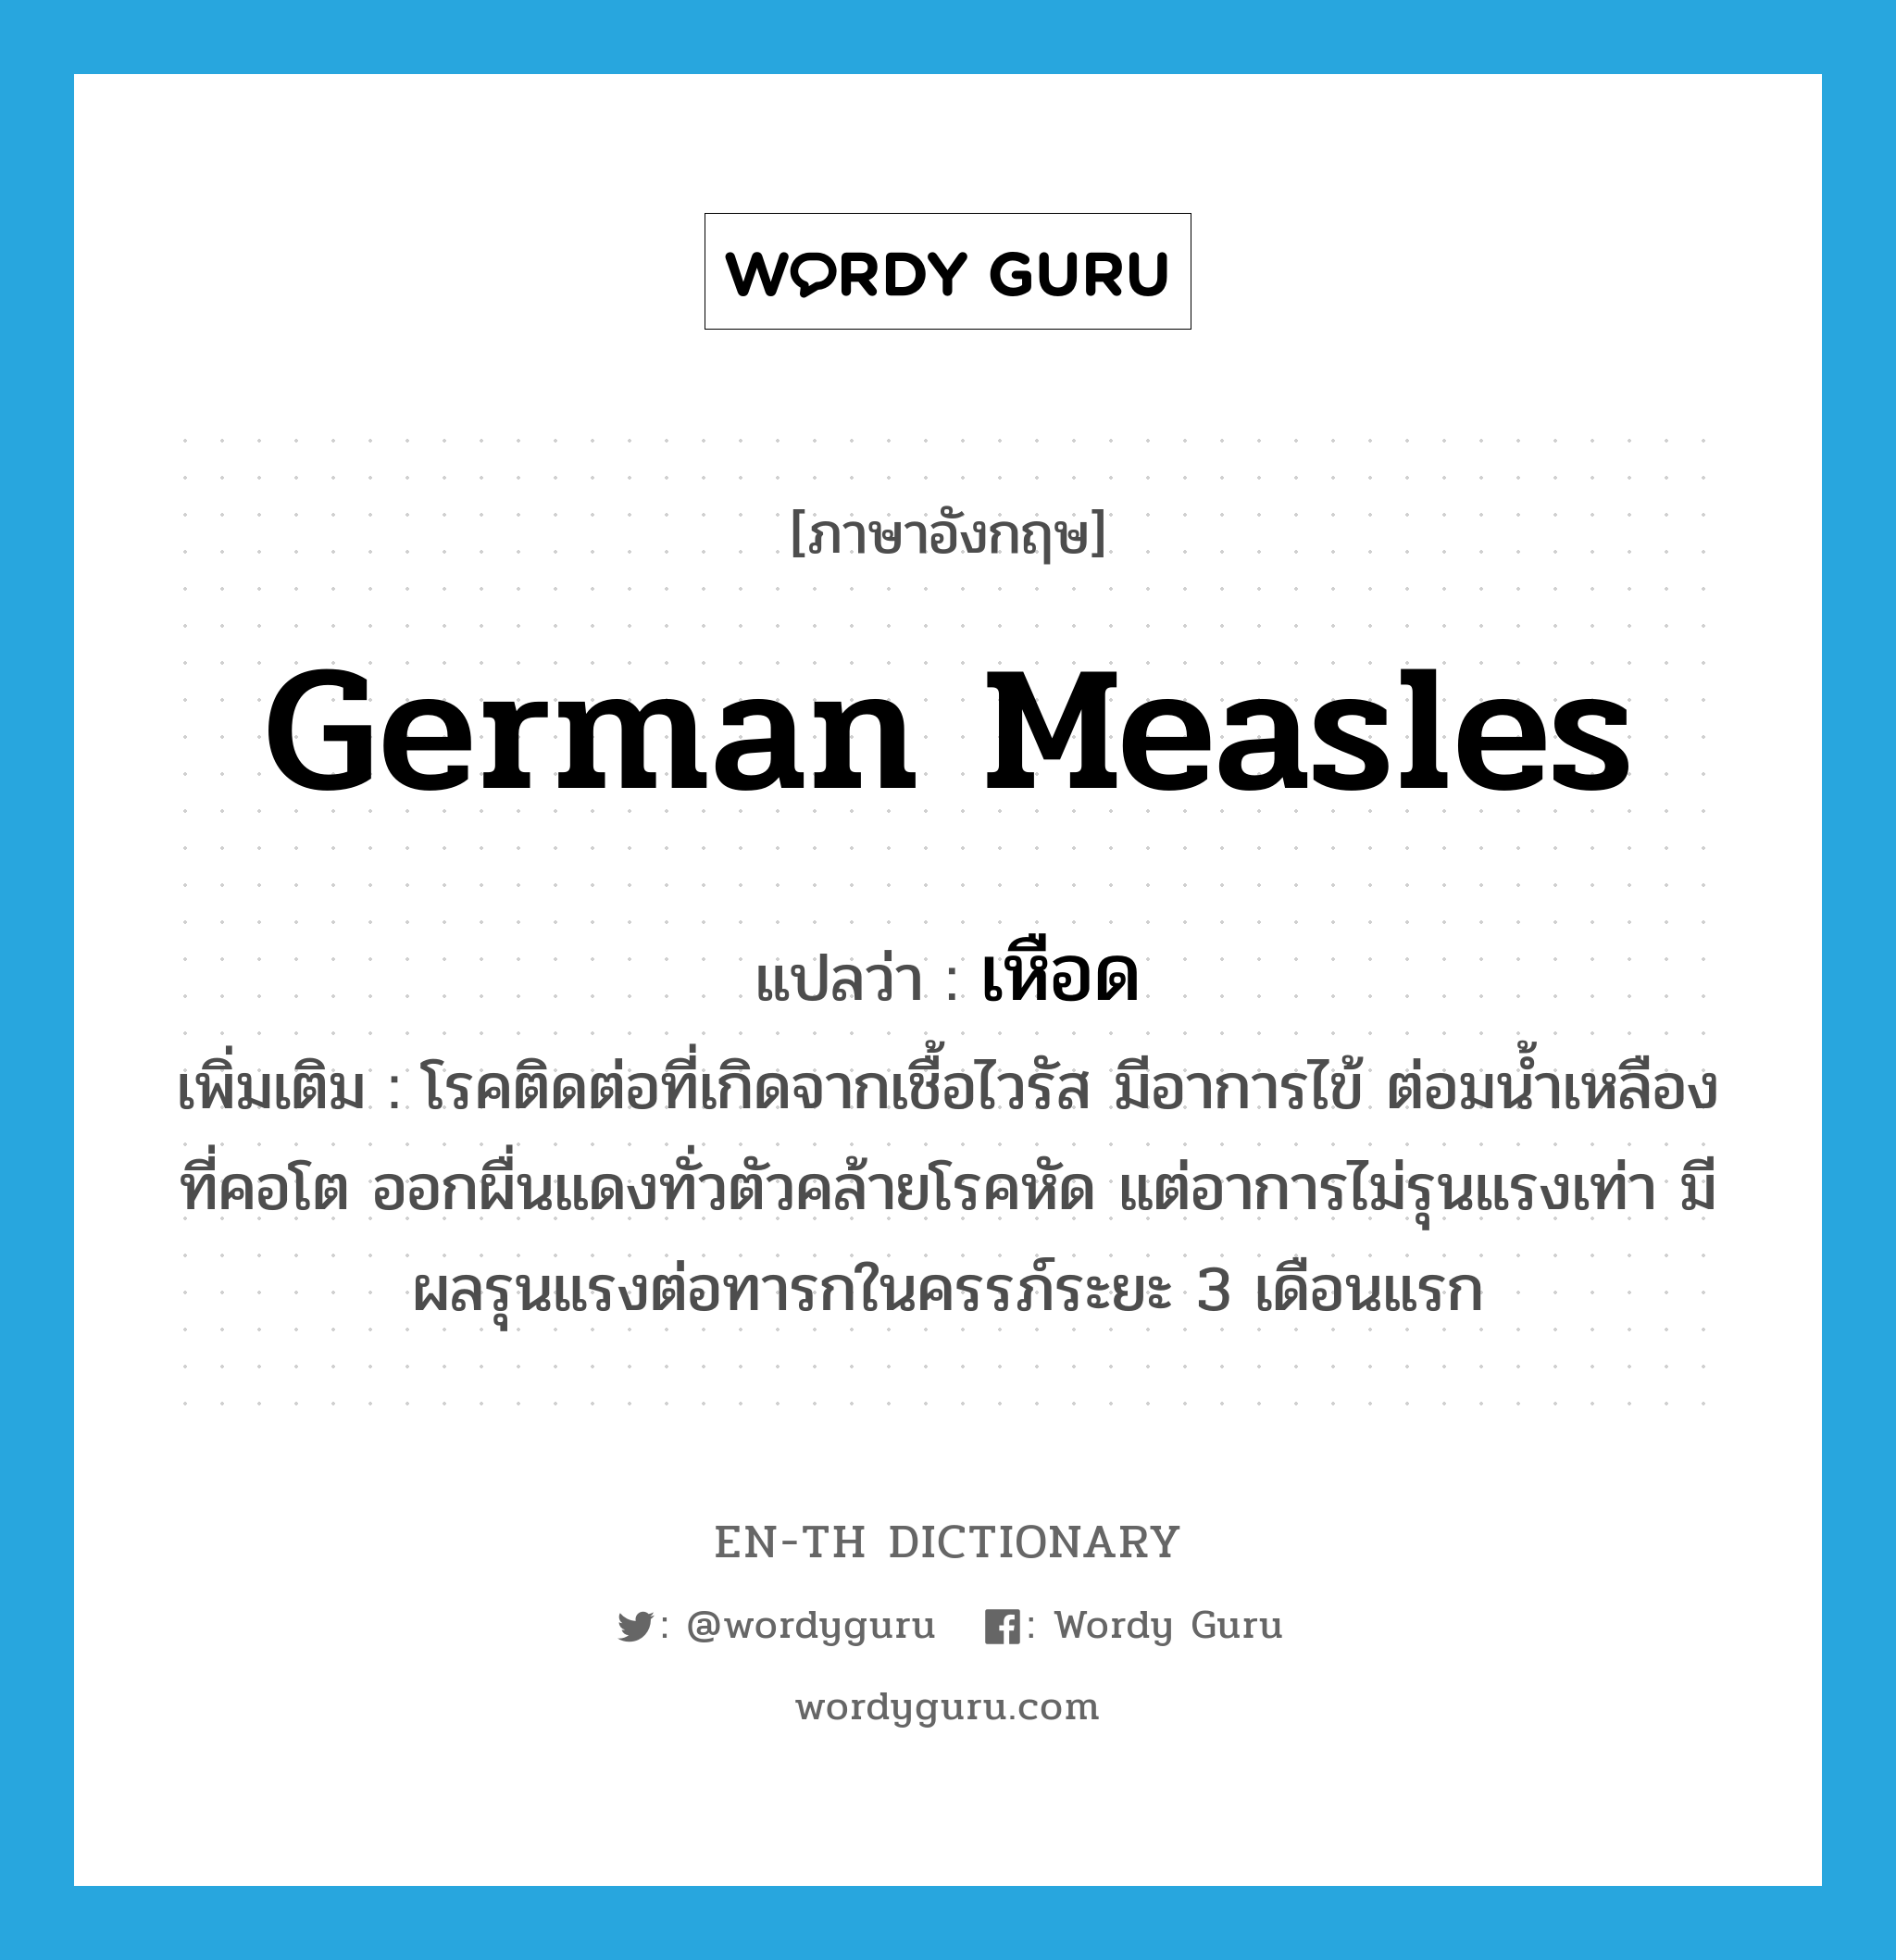 German measles แปลว่า?, คำศัพท์ภาษาอังกฤษ German measles แปลว่า เหือด ประเภท N เพิ่มเติม โรคติดต่อที่เกิดจากเชื้อไวรัส มีอาการไข้ ต่อมน้ำเหลืองที่คอโต ออกผื่นแดงทั่วตัวคล้ายโรคหัด แต่อาการไม่รุนแรงเท่า มีผลรุนแรงต่อทารกในครรภ์ระยะ 3 เดือนแรก หมวด N